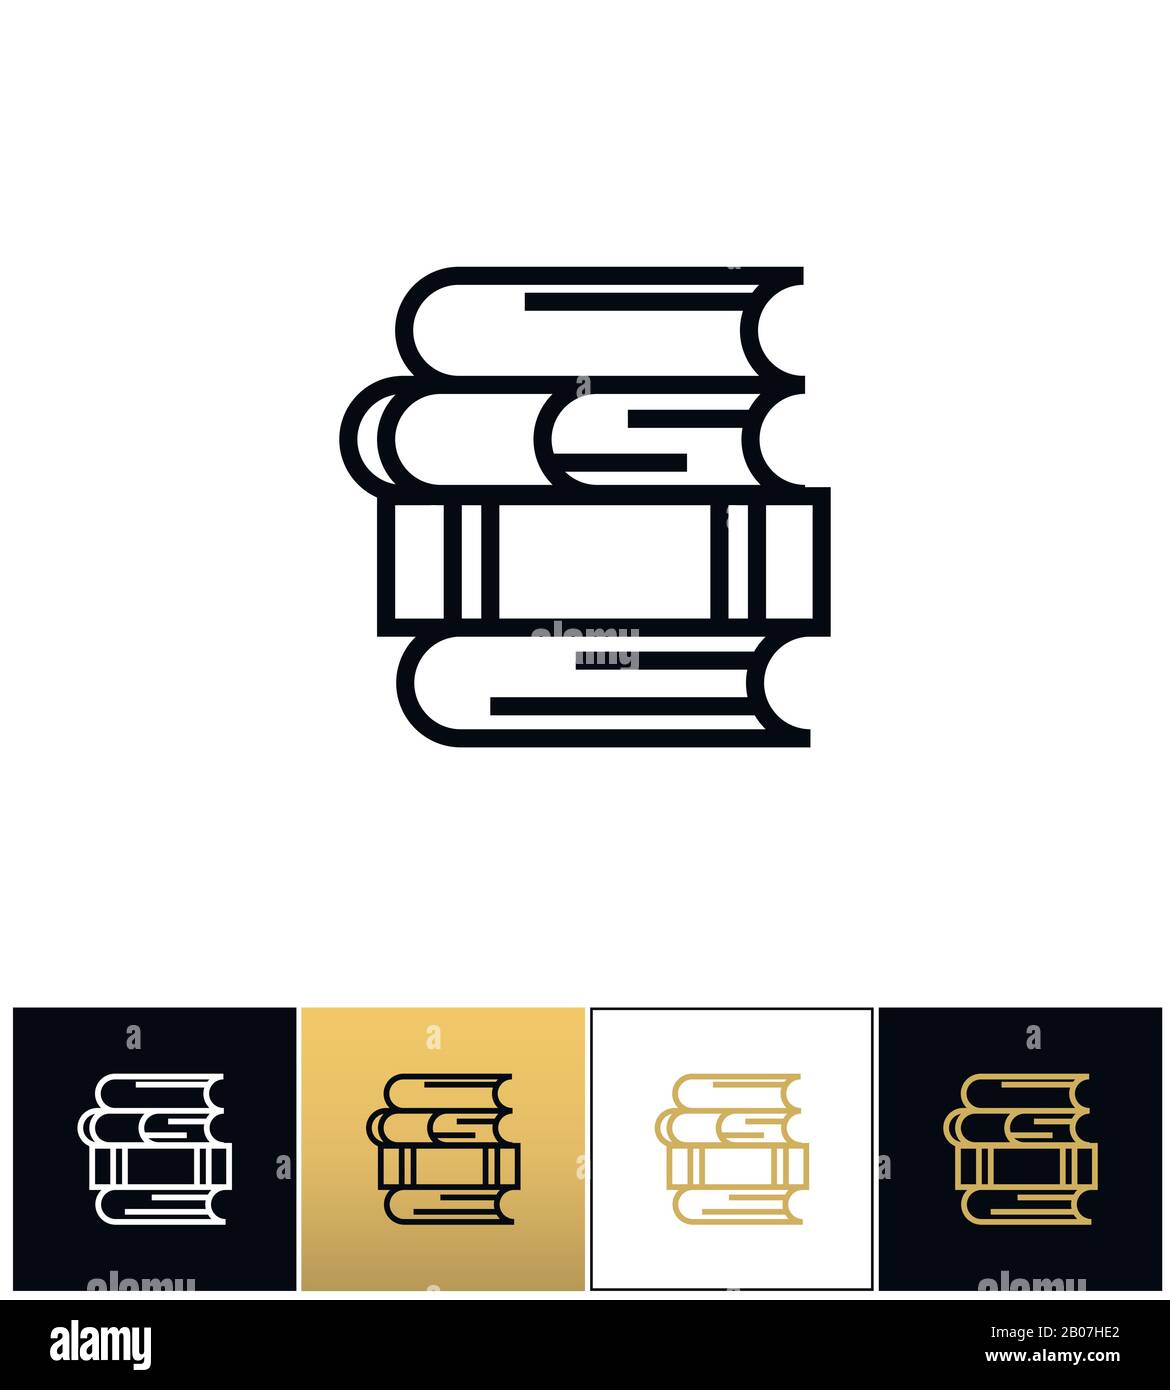 Linienstapel für Studien- und Bibliotheksvektor-Symbol. Lineare Bücher stapeln sich für das Piktogramm "Studie" und "Bibliothek" auf schwarzem, weißem und goldenem Hintergrund Stock Vektor